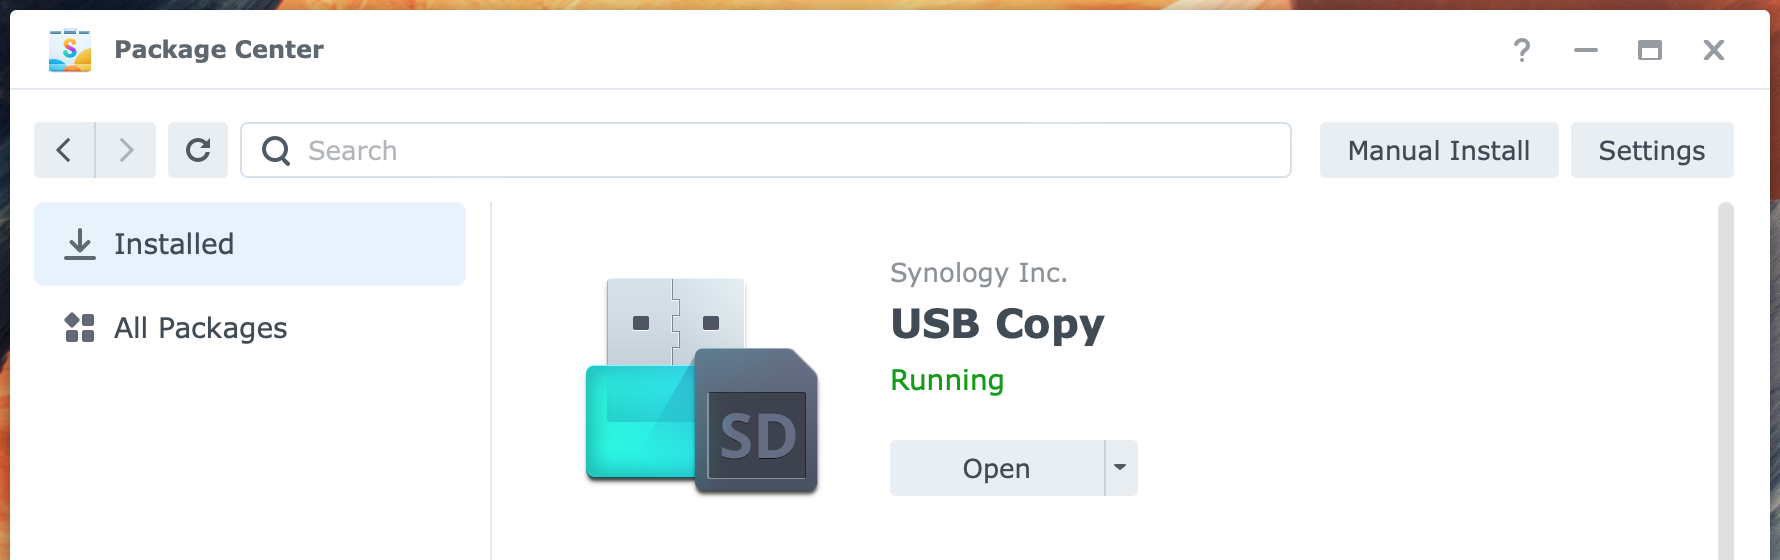 USB Copy – datasheet